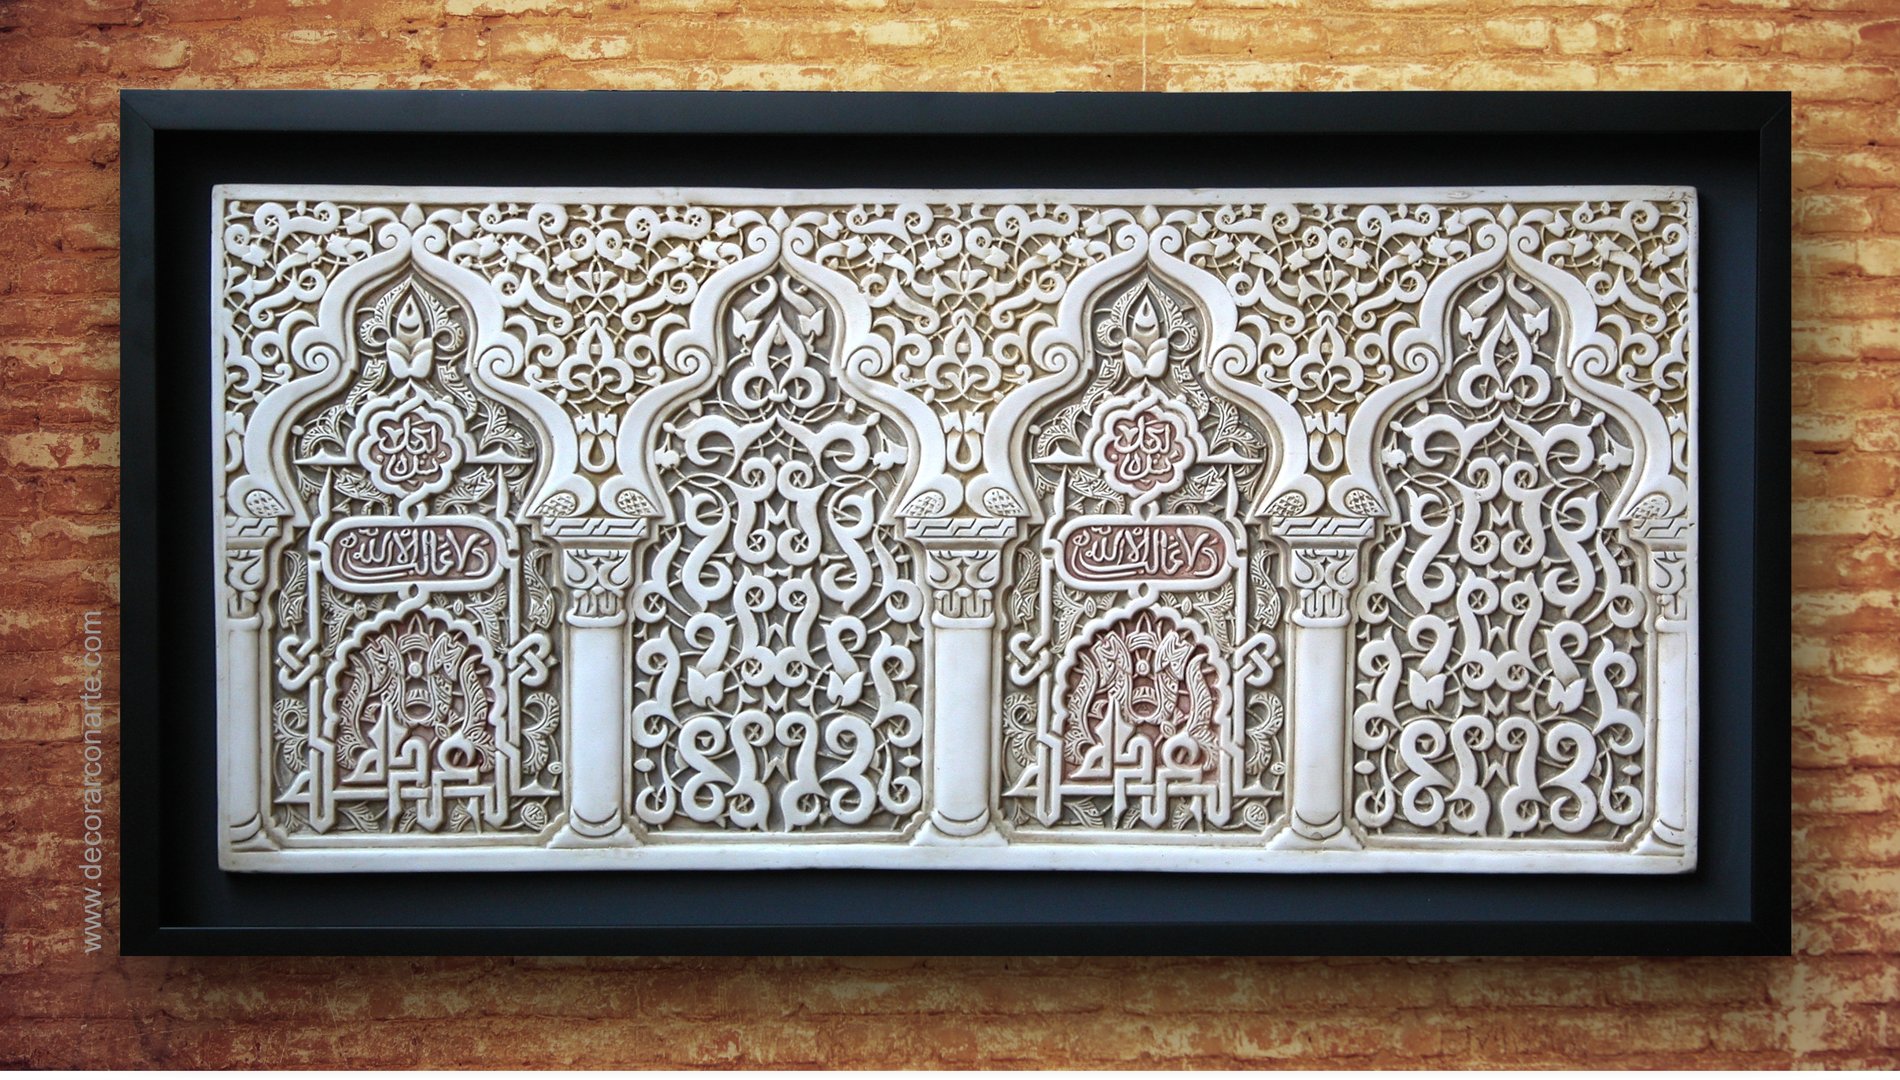 Tableau relief de nasride Ataurique. 98x50cm - décoration arabe